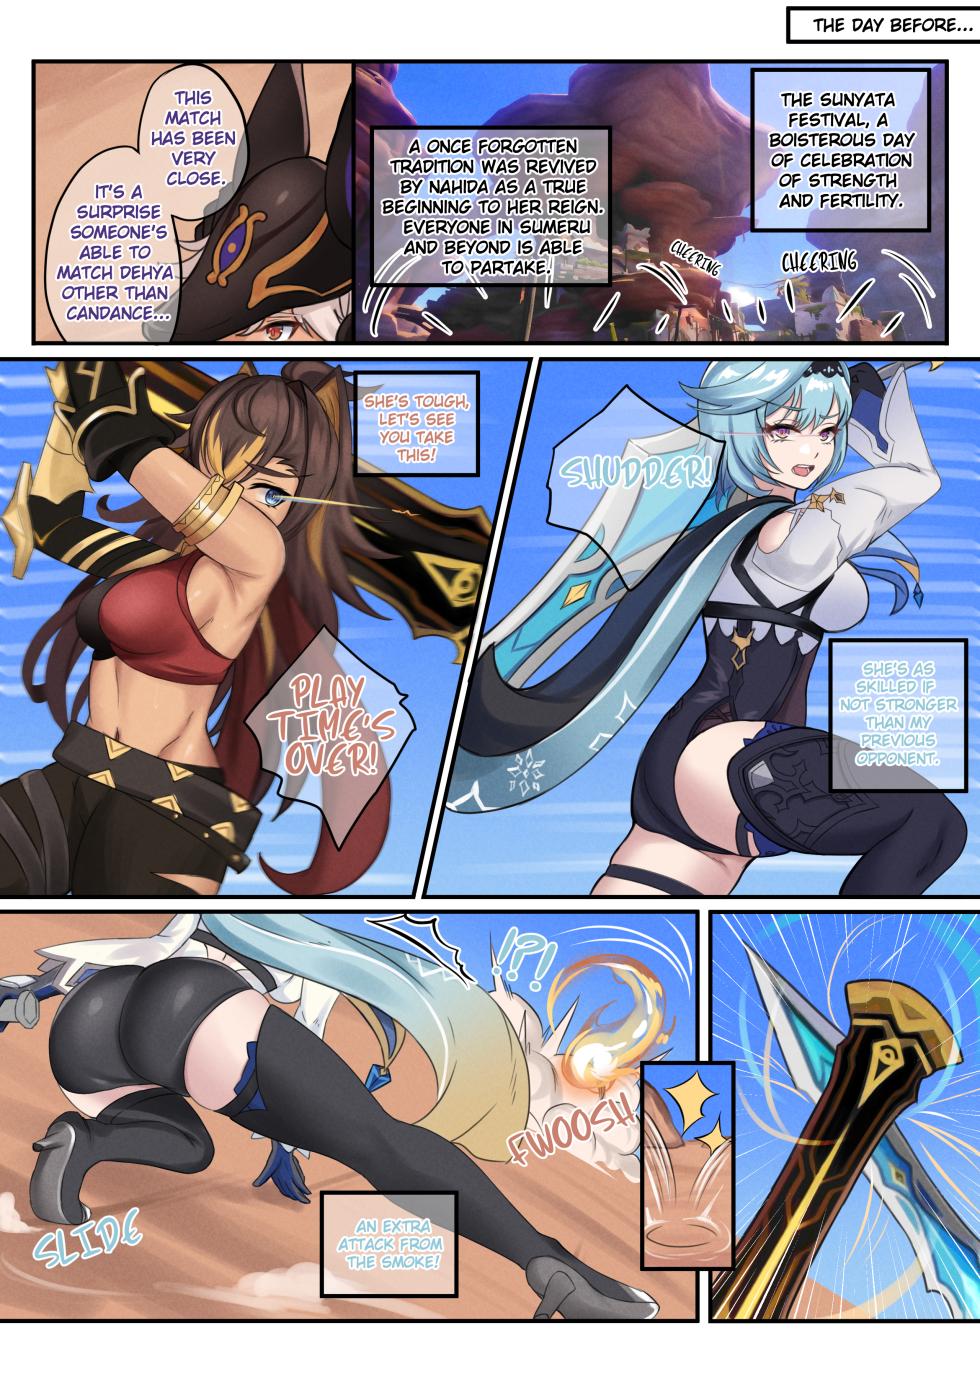 [BruLee] Hot and Cold Sunyata (Genshin Impact) [Sample] - Page 4